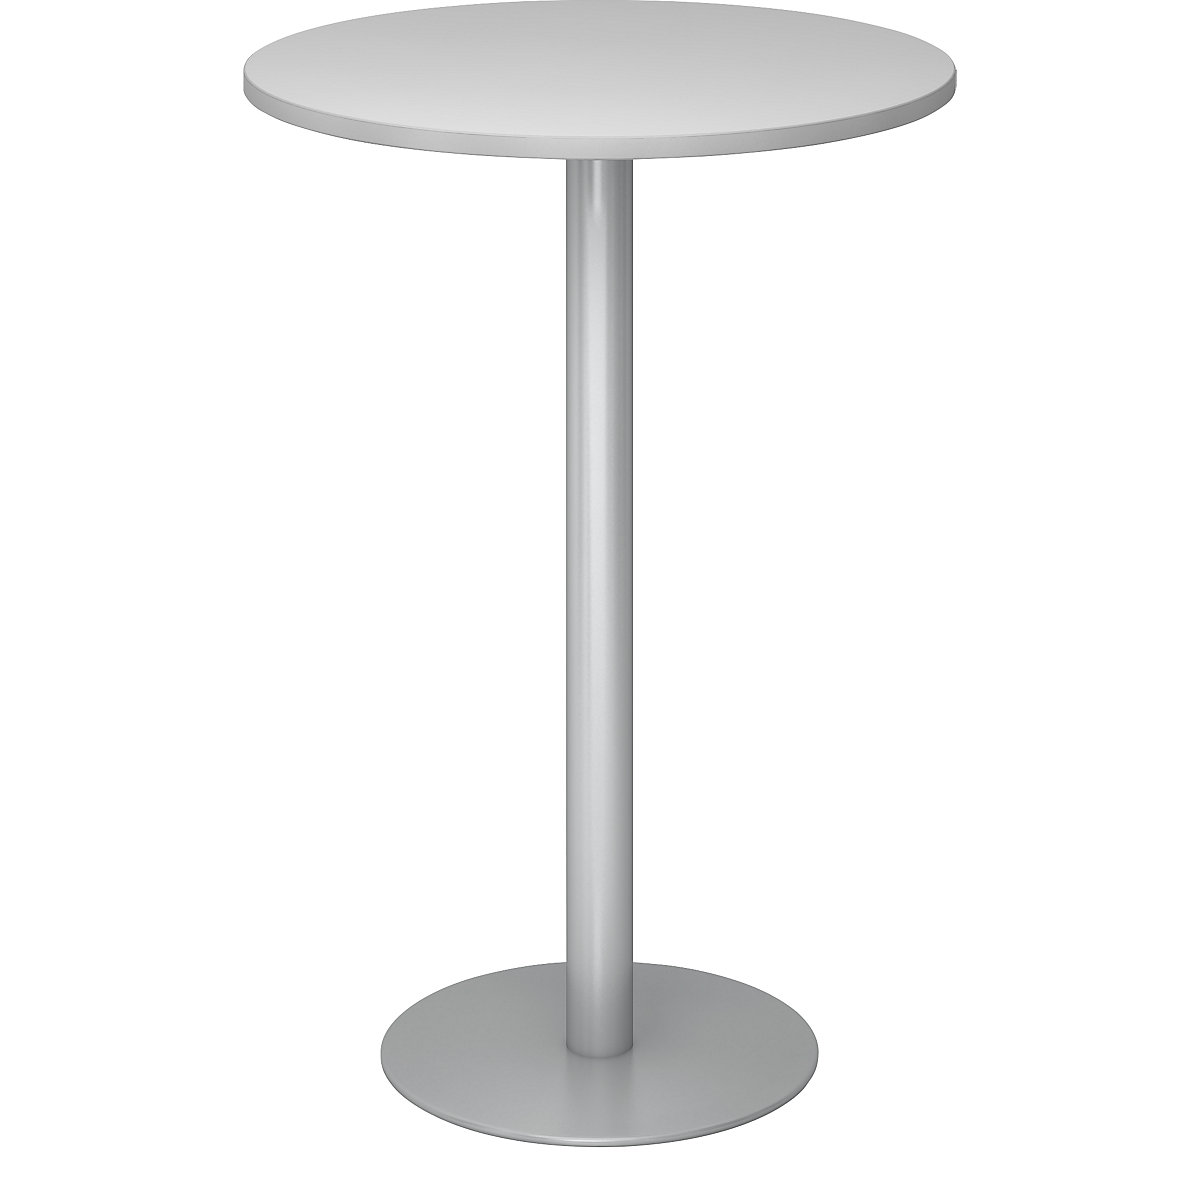 Állóasztal, Ø 800 mm, 1116 mm magas, ezüst váz, világosszürke asztallap-7